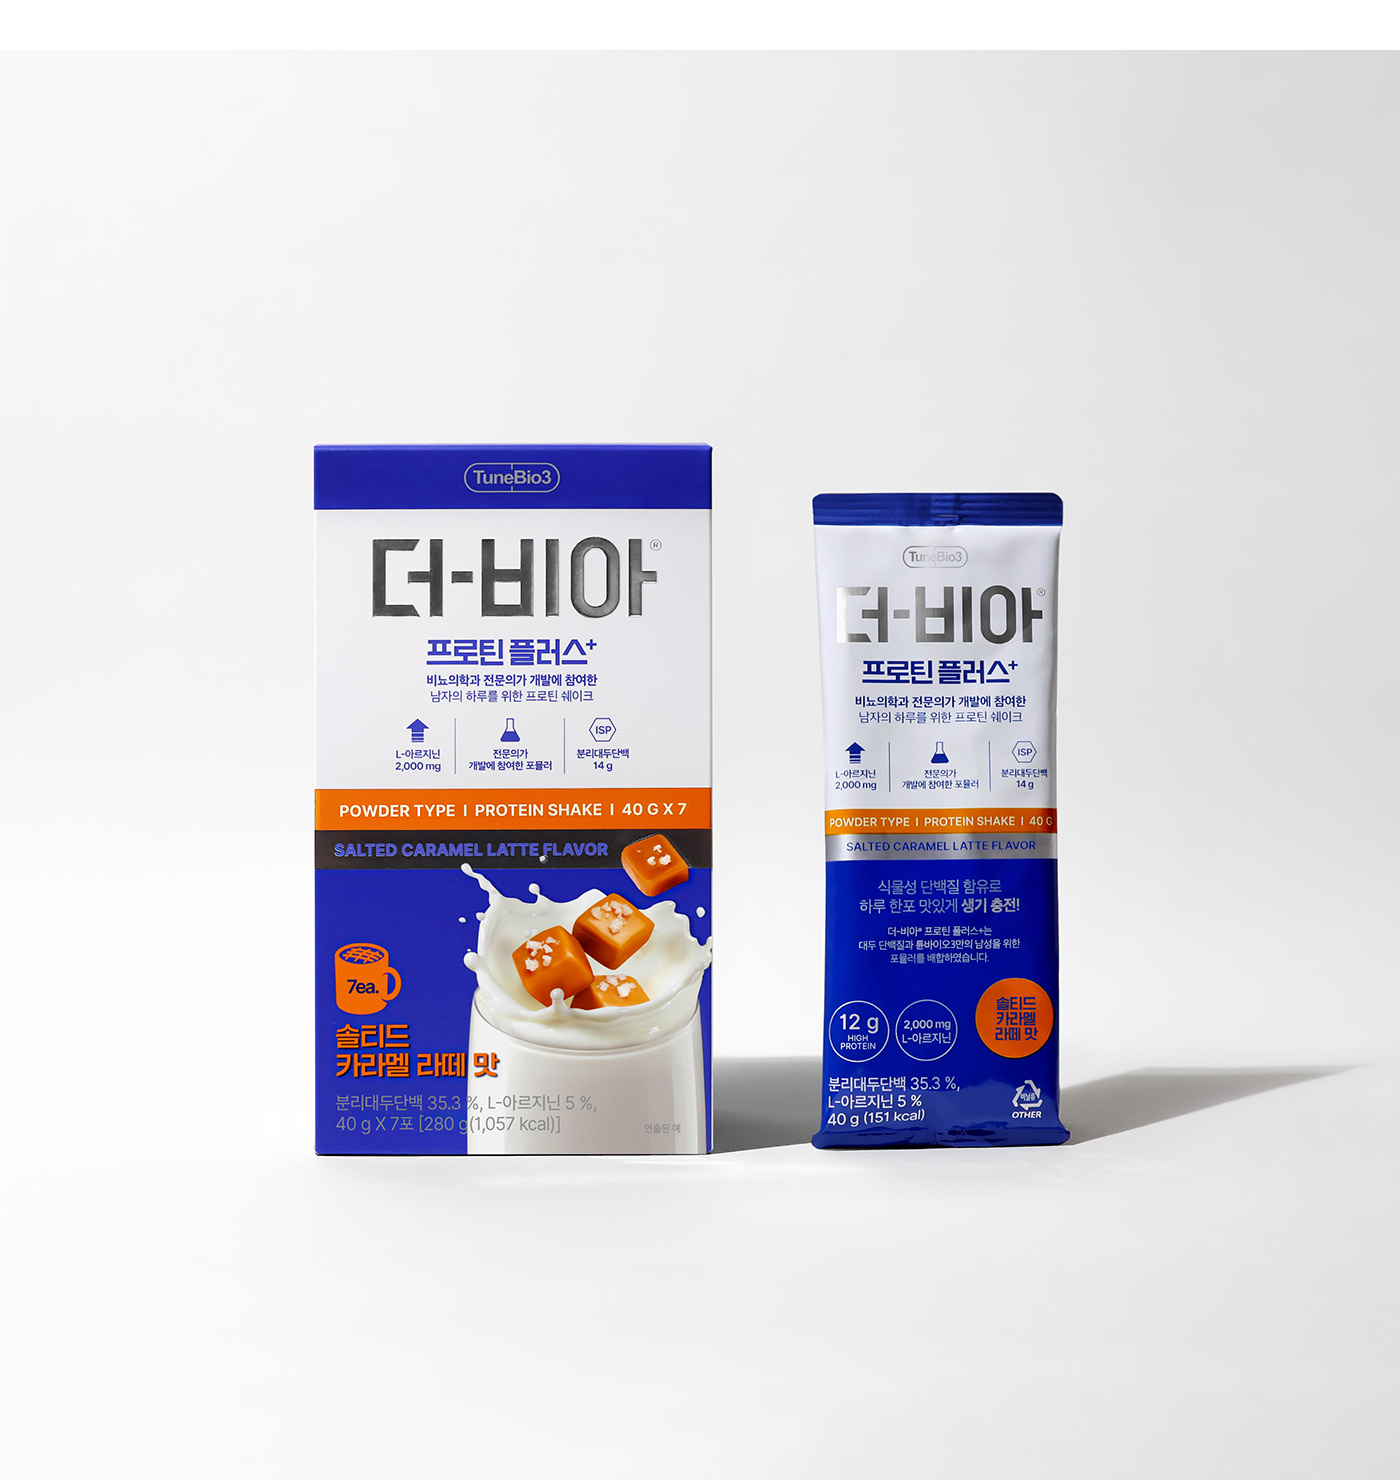 Packaging branding  package package design  protein Food 